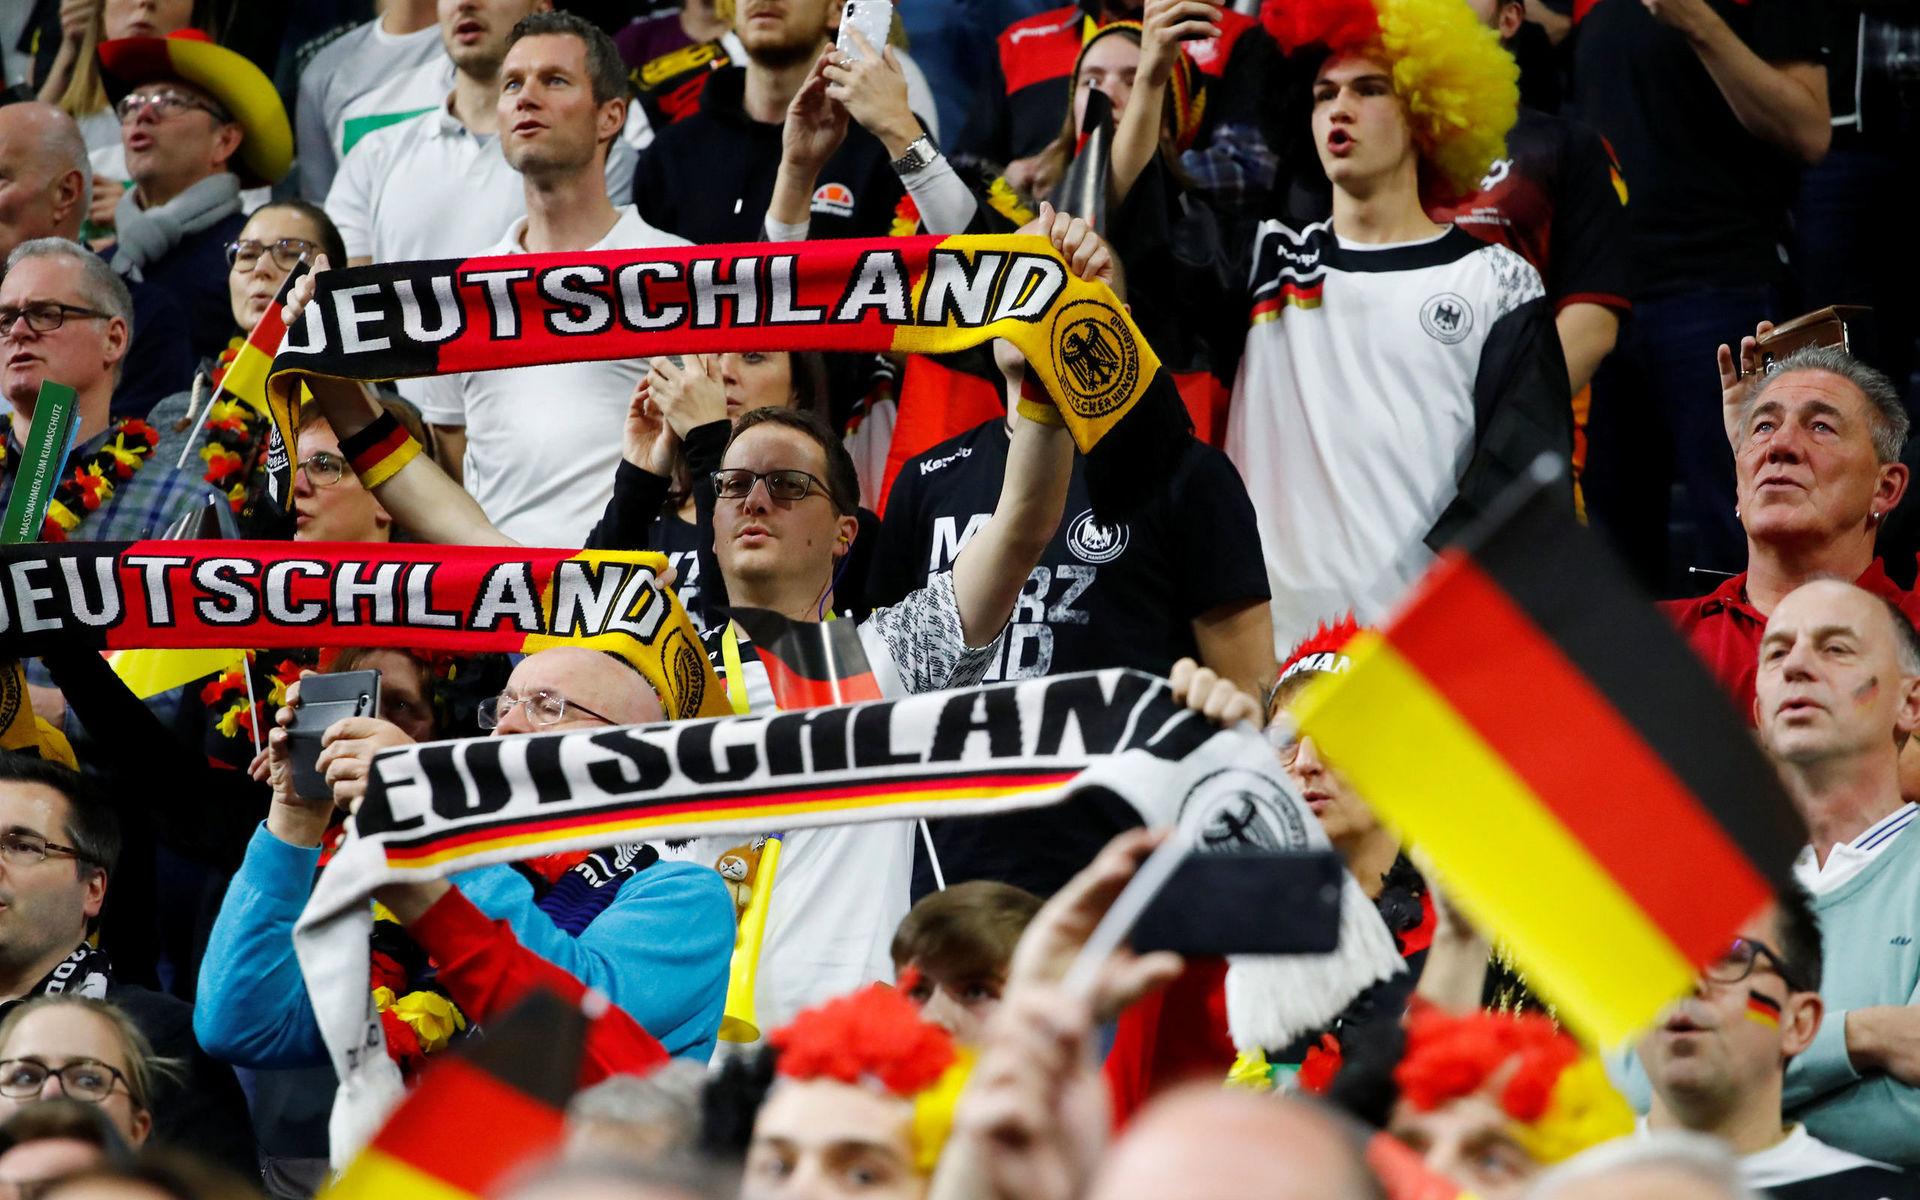 Det blir fullsatt i Lanxess arena när Tyskland möter Spanien i mellanrundans sista match.